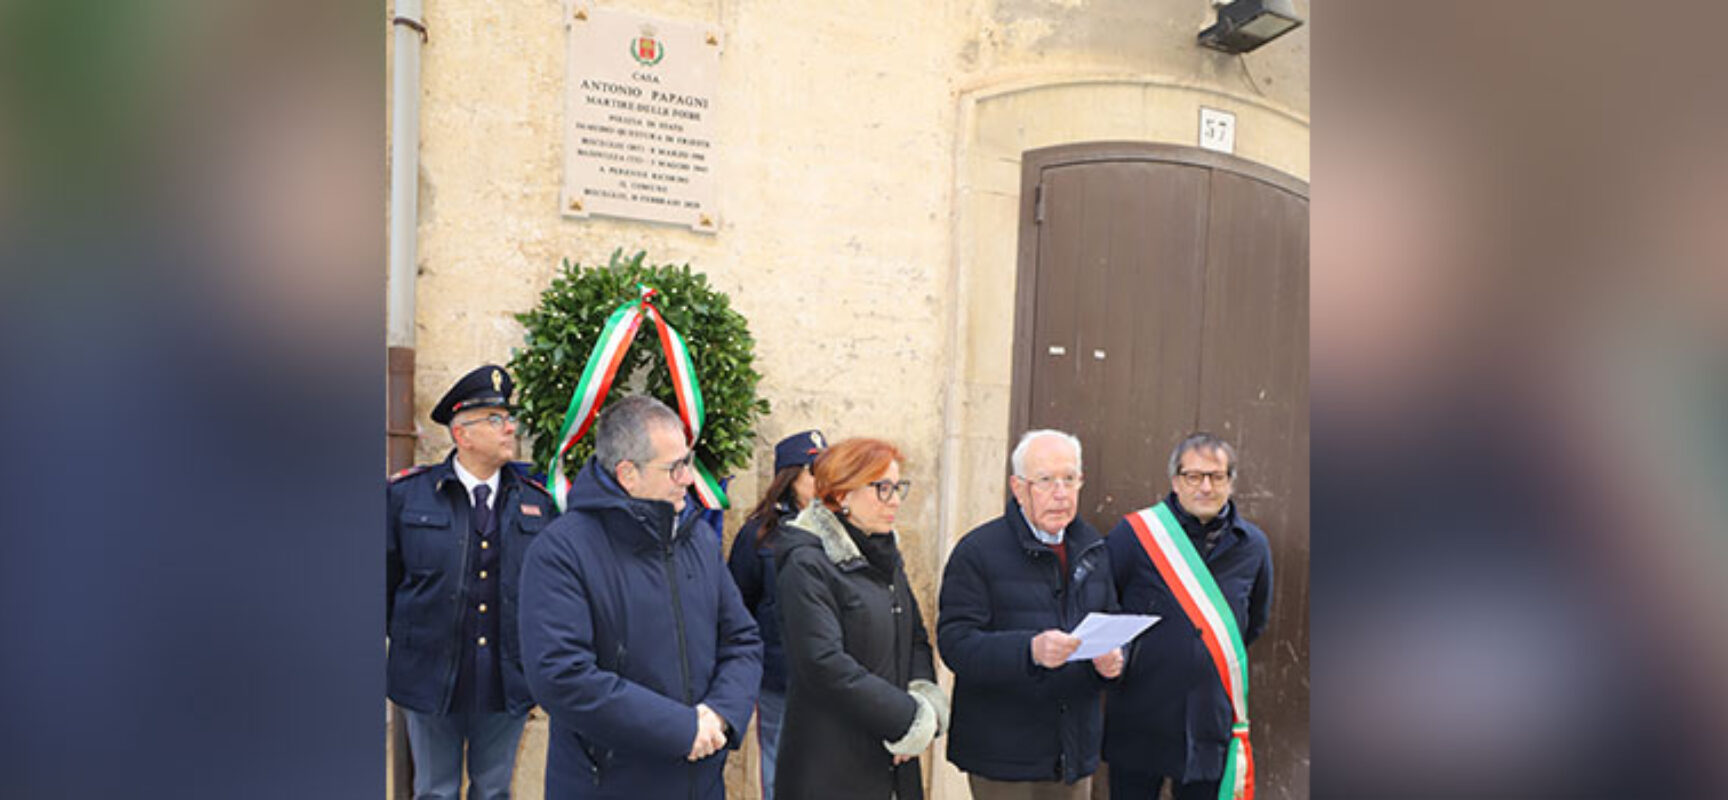 Bisceglie onora la memoria di Antonio Papagni, vittima del massacro delle Foibe / FOTO